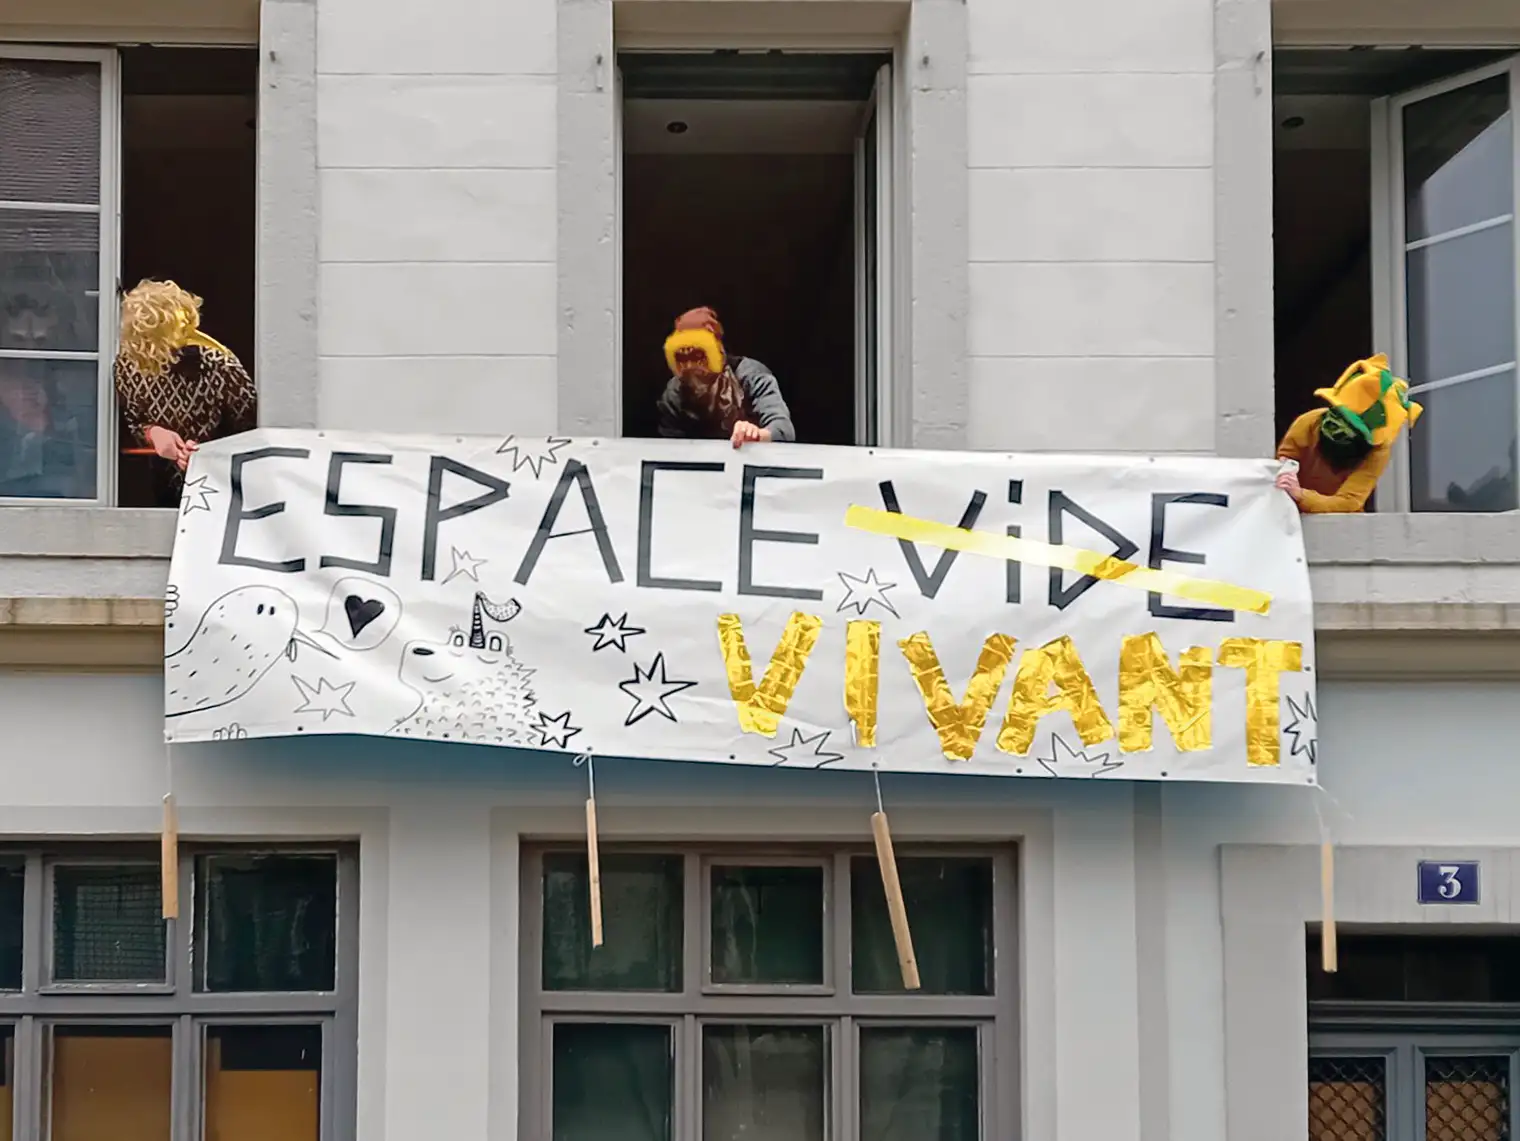 Des membres du collectif Espacito tendent une banderole "Espace Vivant” sur un immeuble de la Chaux-de-Fonds